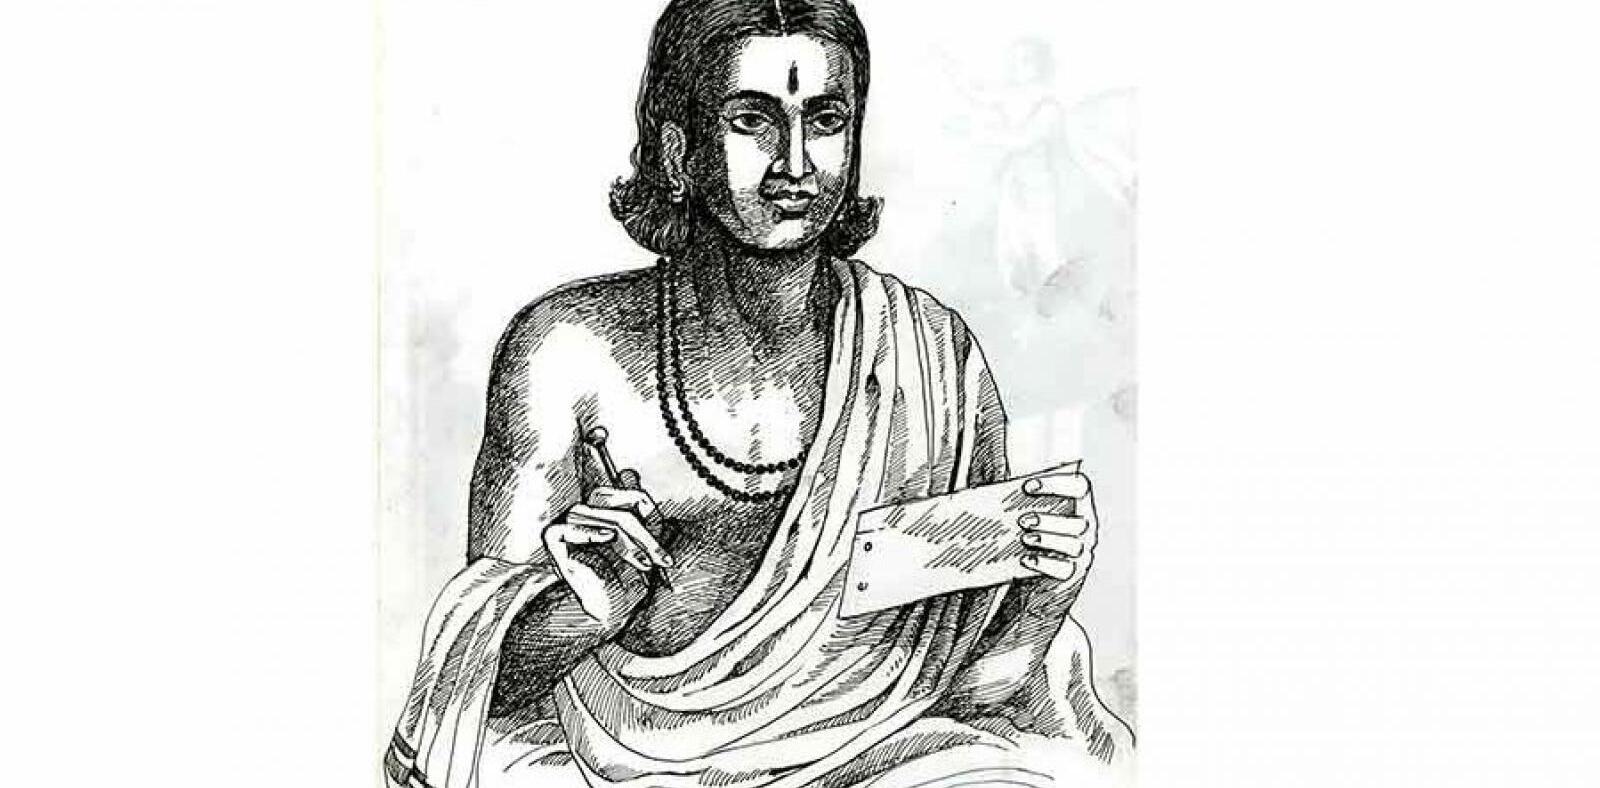 Kavikulaguru Kalidasa: India’s National Poet